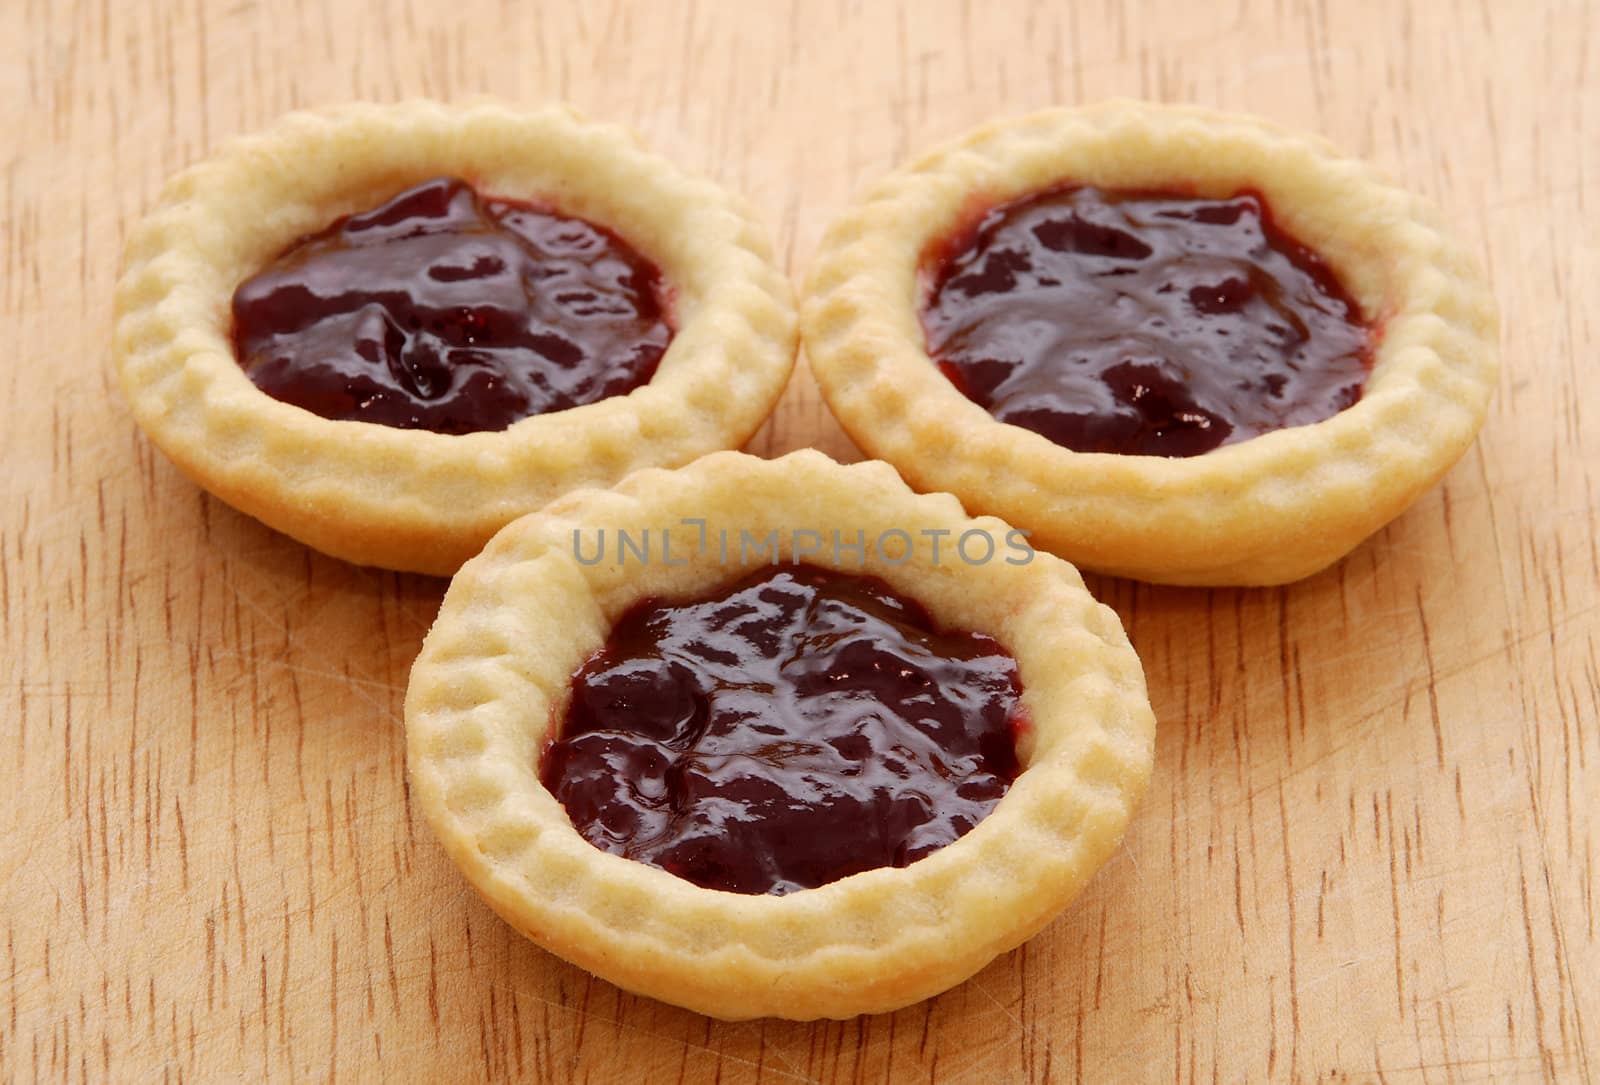 Three tasty jam tarts sitting on a wooden table